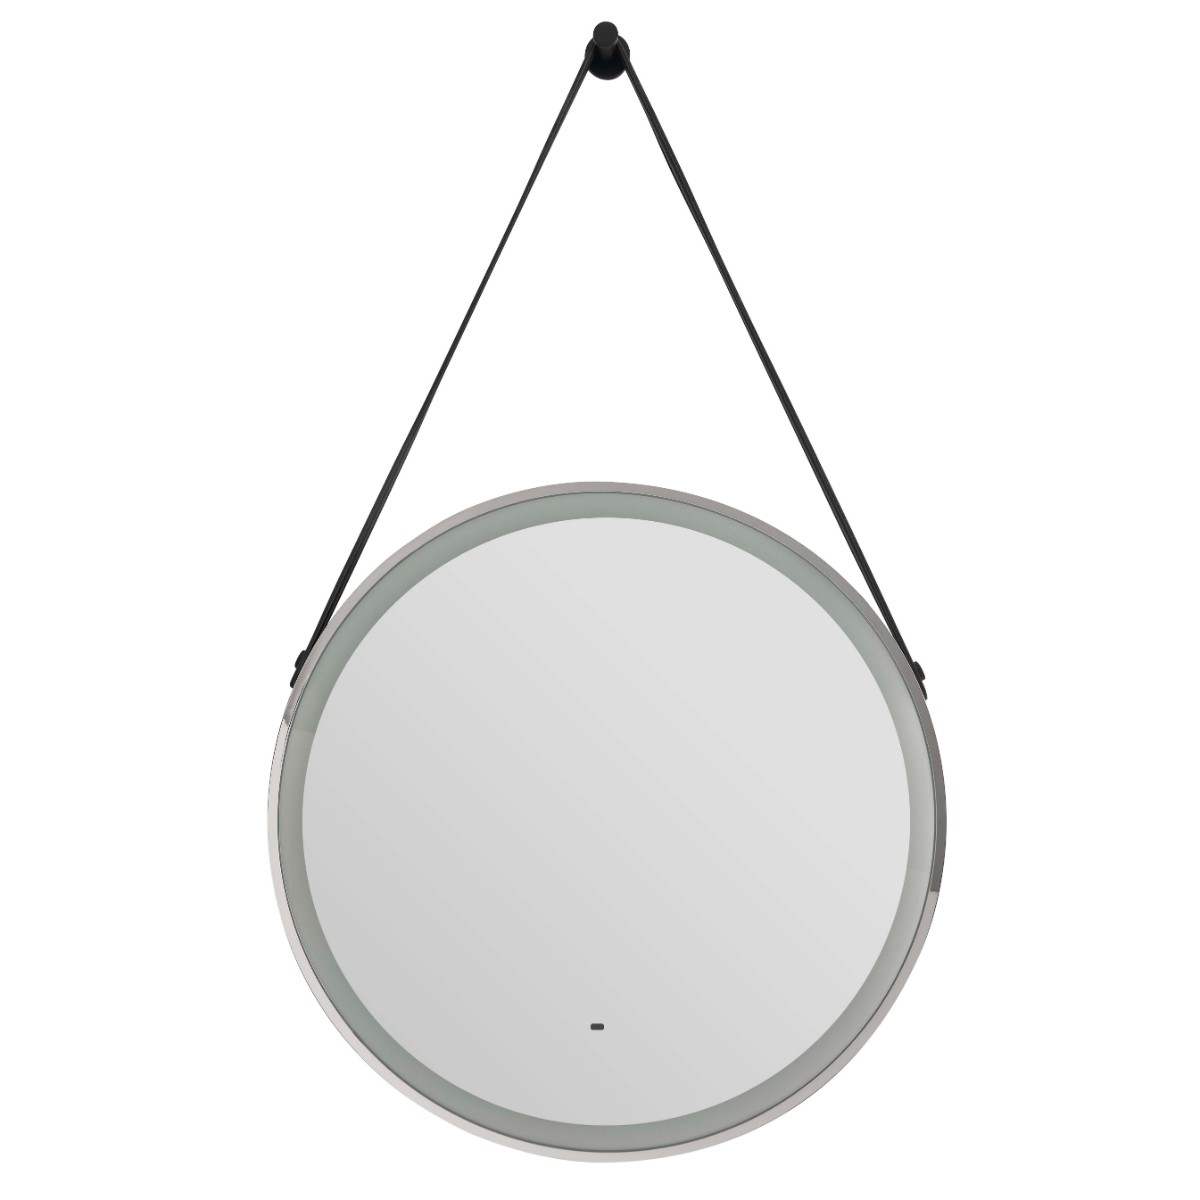 Heritage Amberley Illuminated Circular Mirror 590mm Chrome [MAMC590]